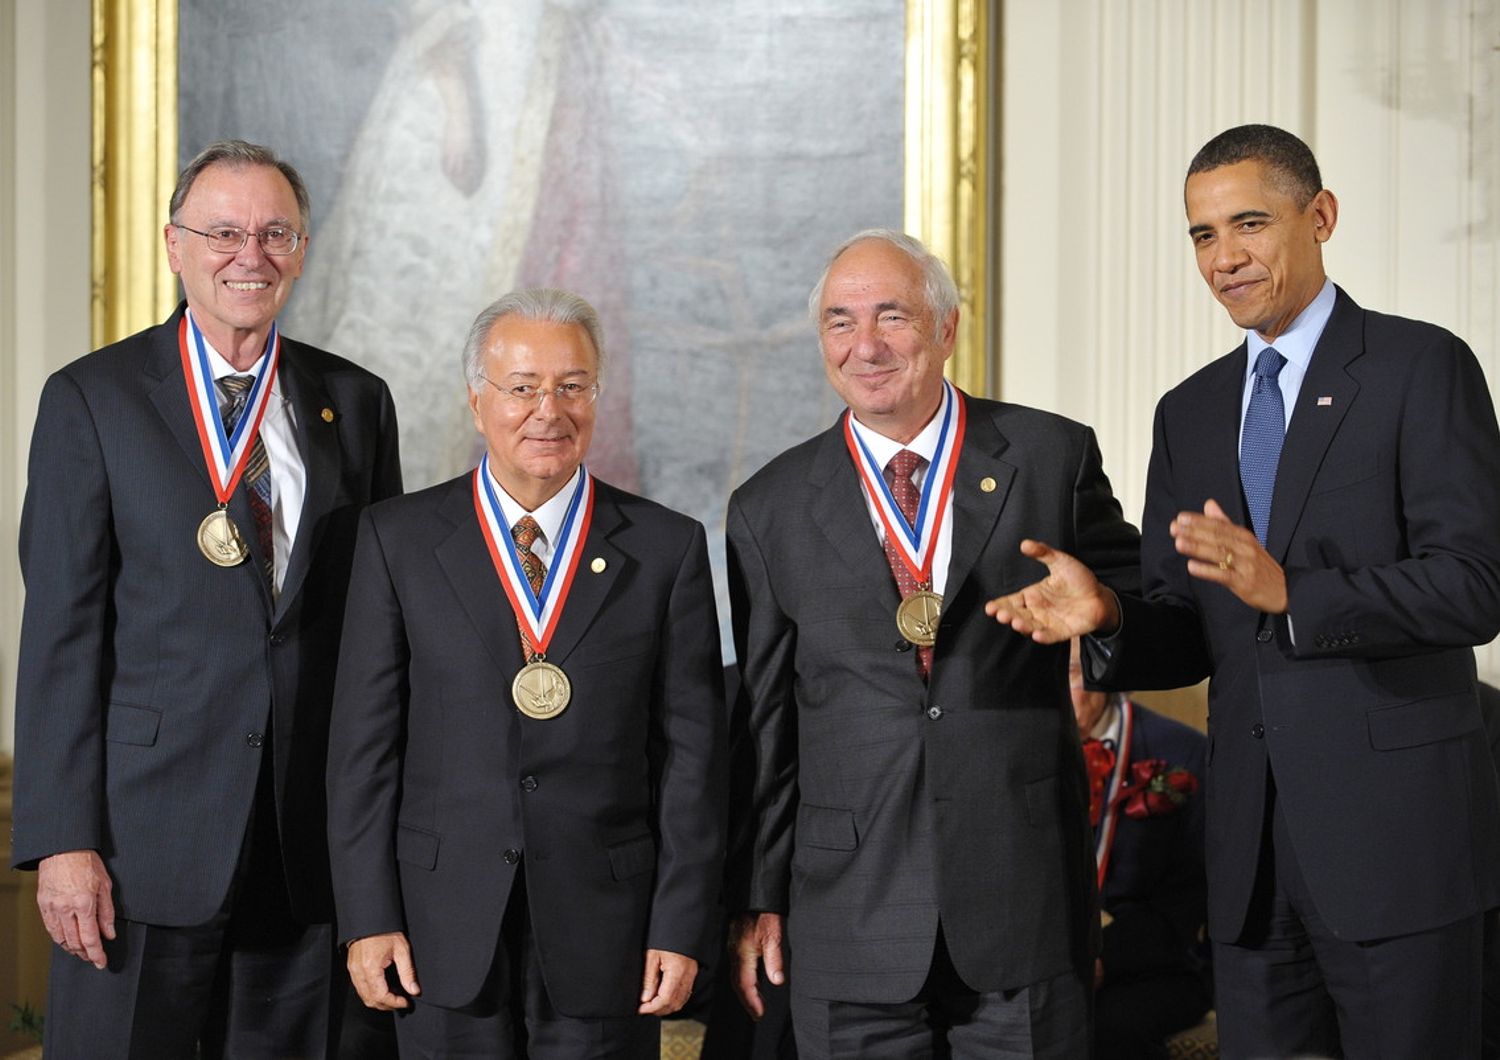 Da sinistra: &quot;Ted&quot; Hoff, Federico Faggin e Stanley Mazor nel 2010 durante l'onorificenza ricevuta da Obama&nbsp;